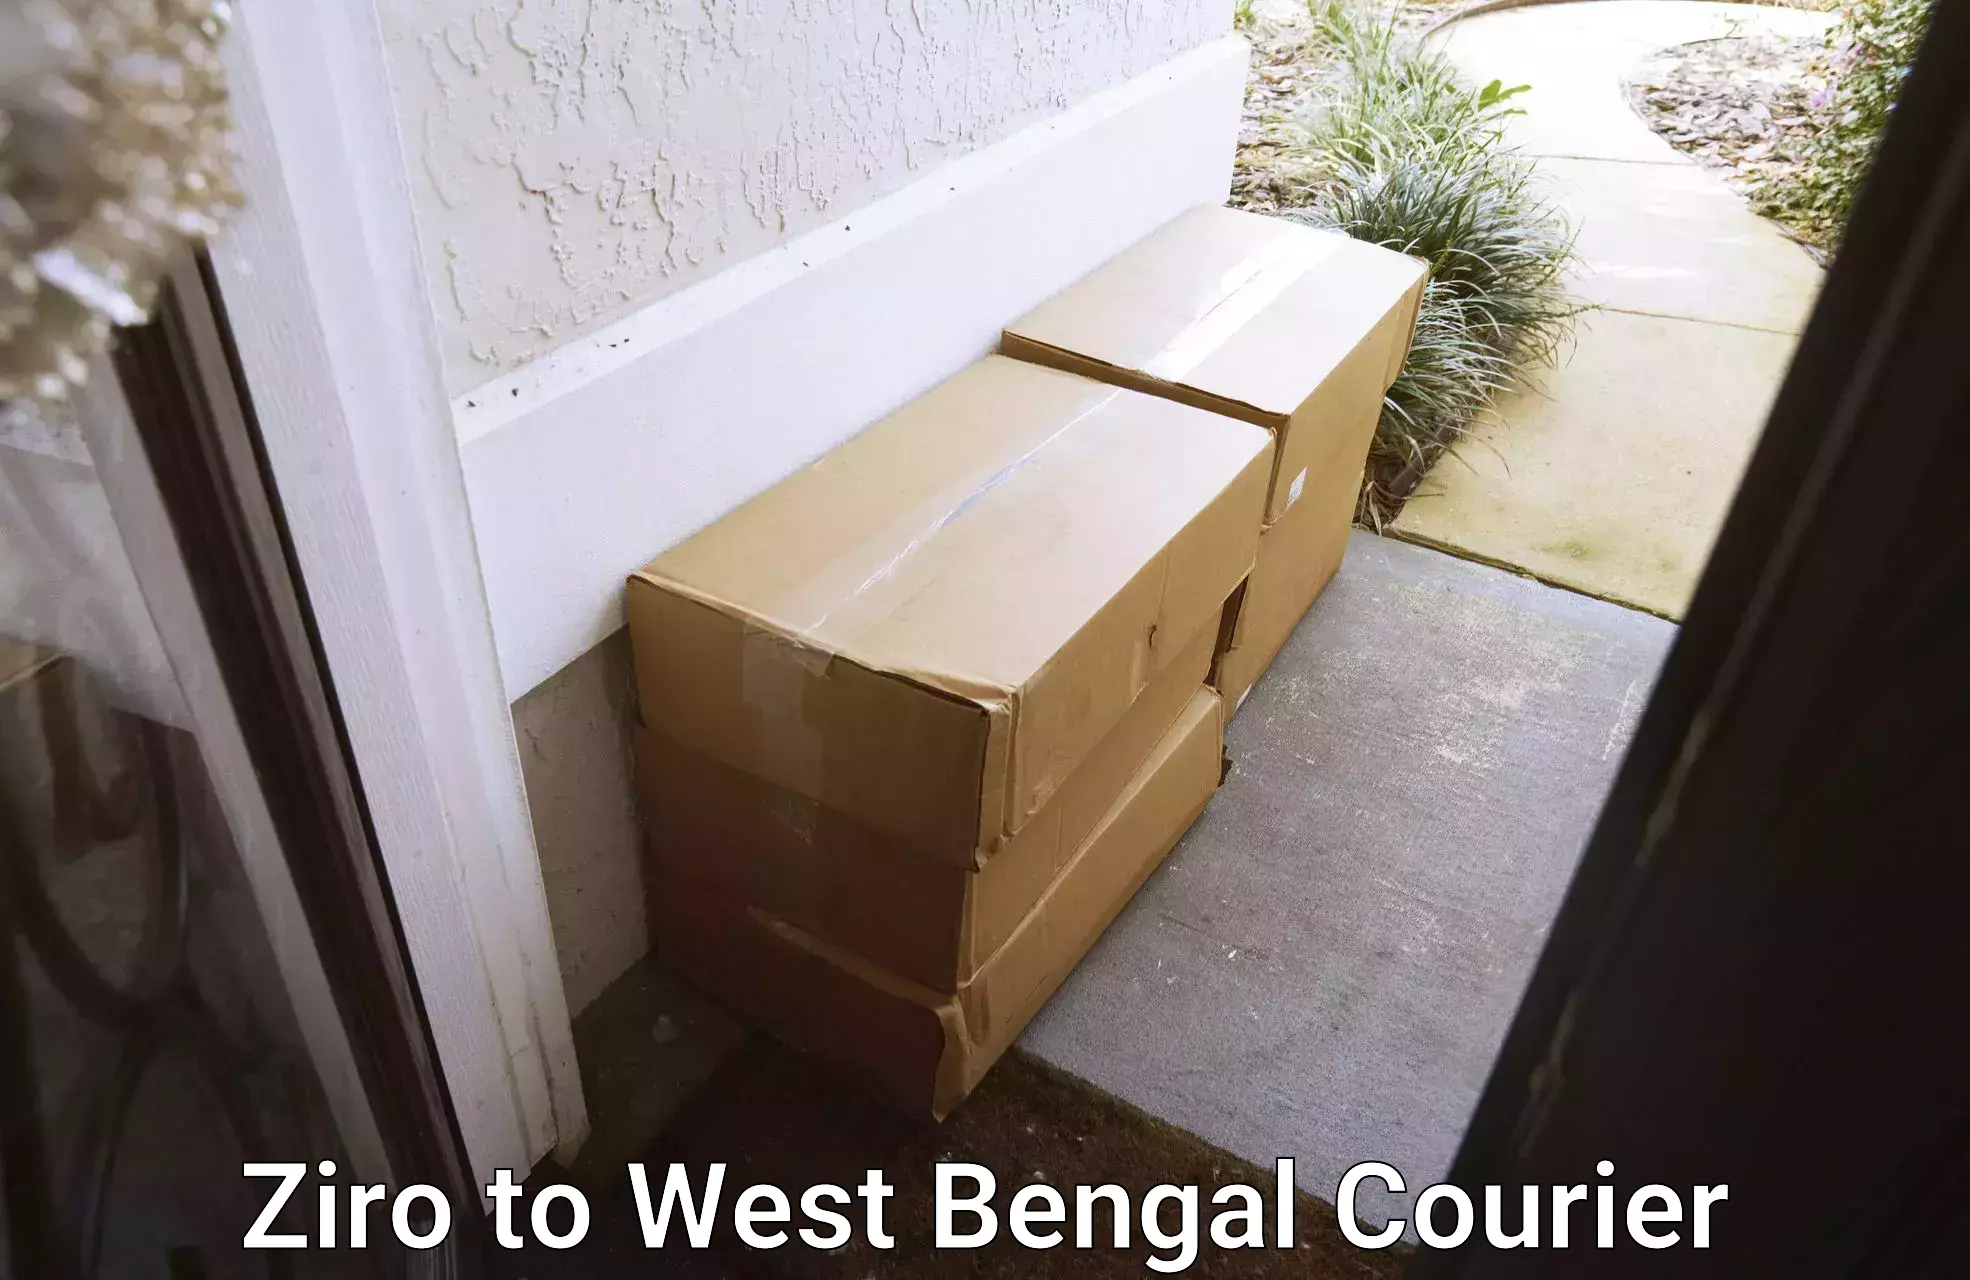 Easy access courier services Ziro to Tista Bazar